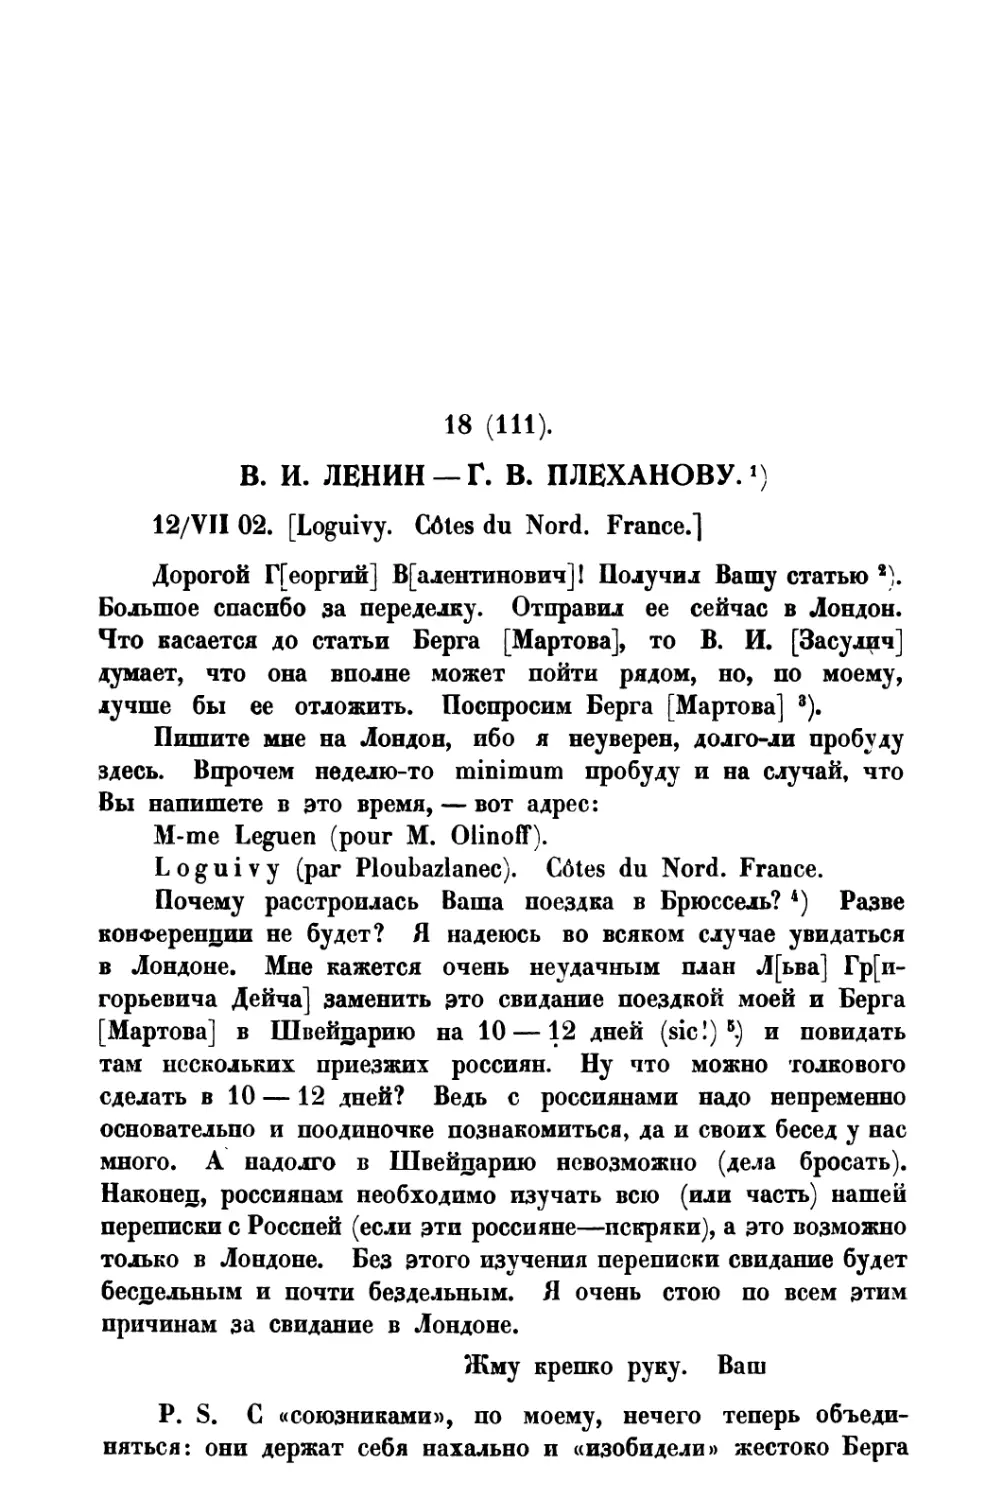 18. В. И. Ленин — Г. В. Плеханову от 12 VII 1902 г